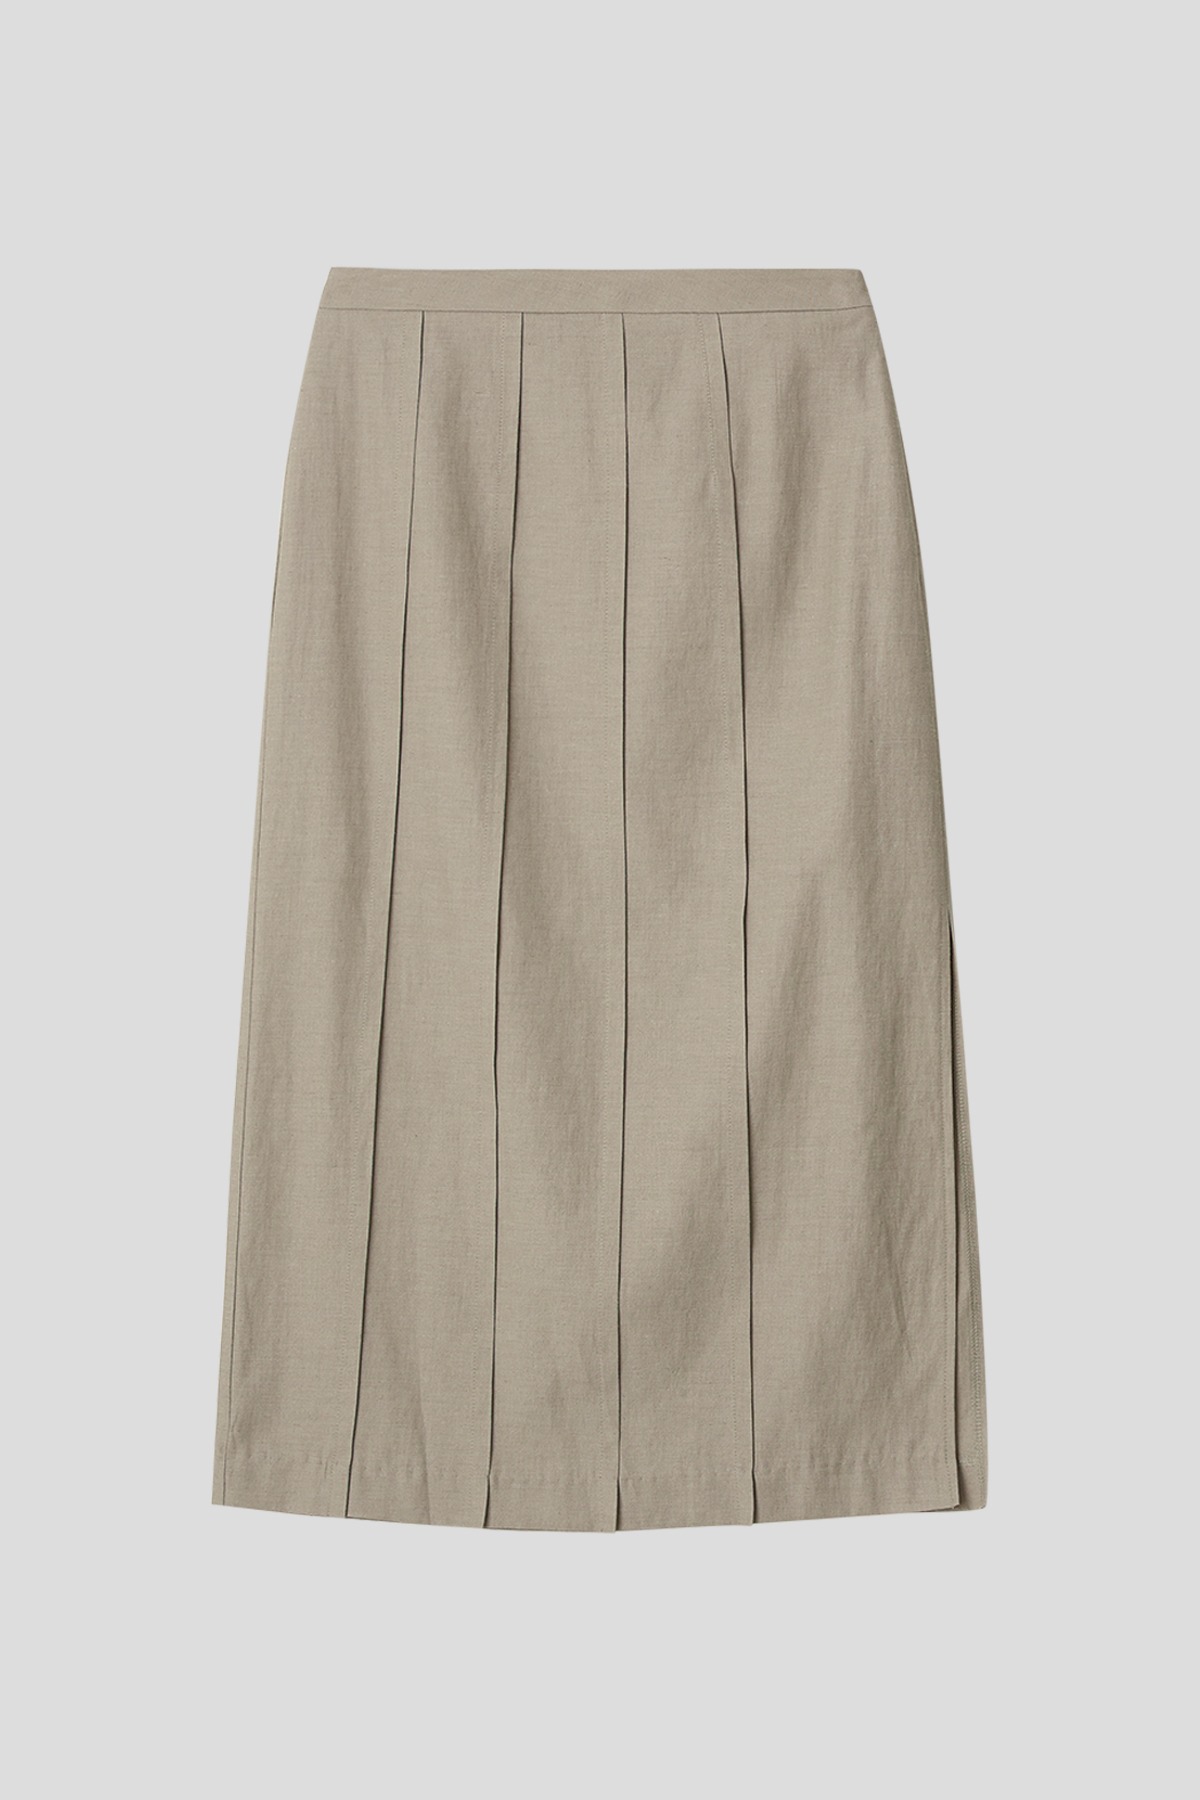 Linen pintuck skirt (khaki beige)